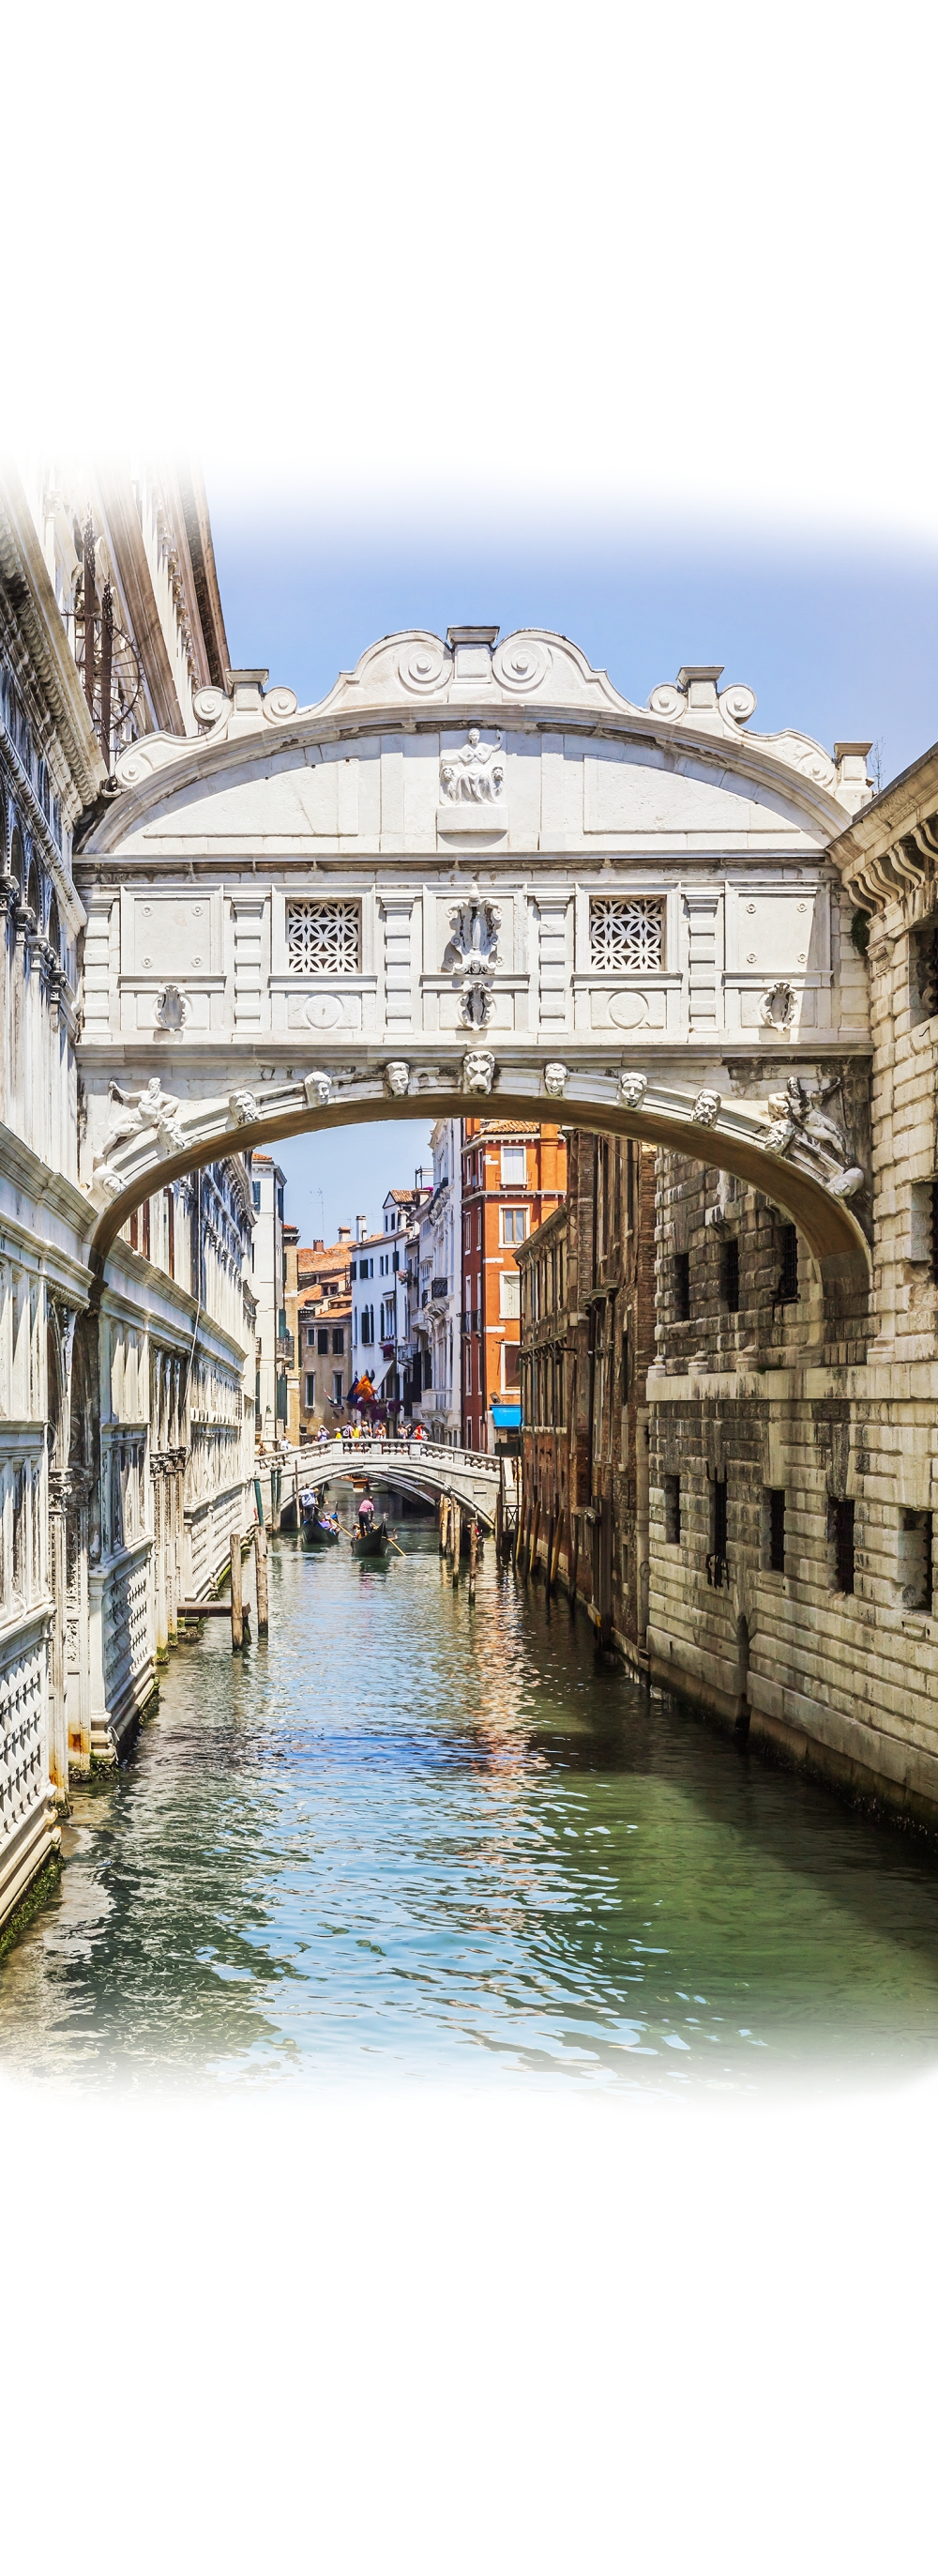 Мостик под аркой канала Венеции